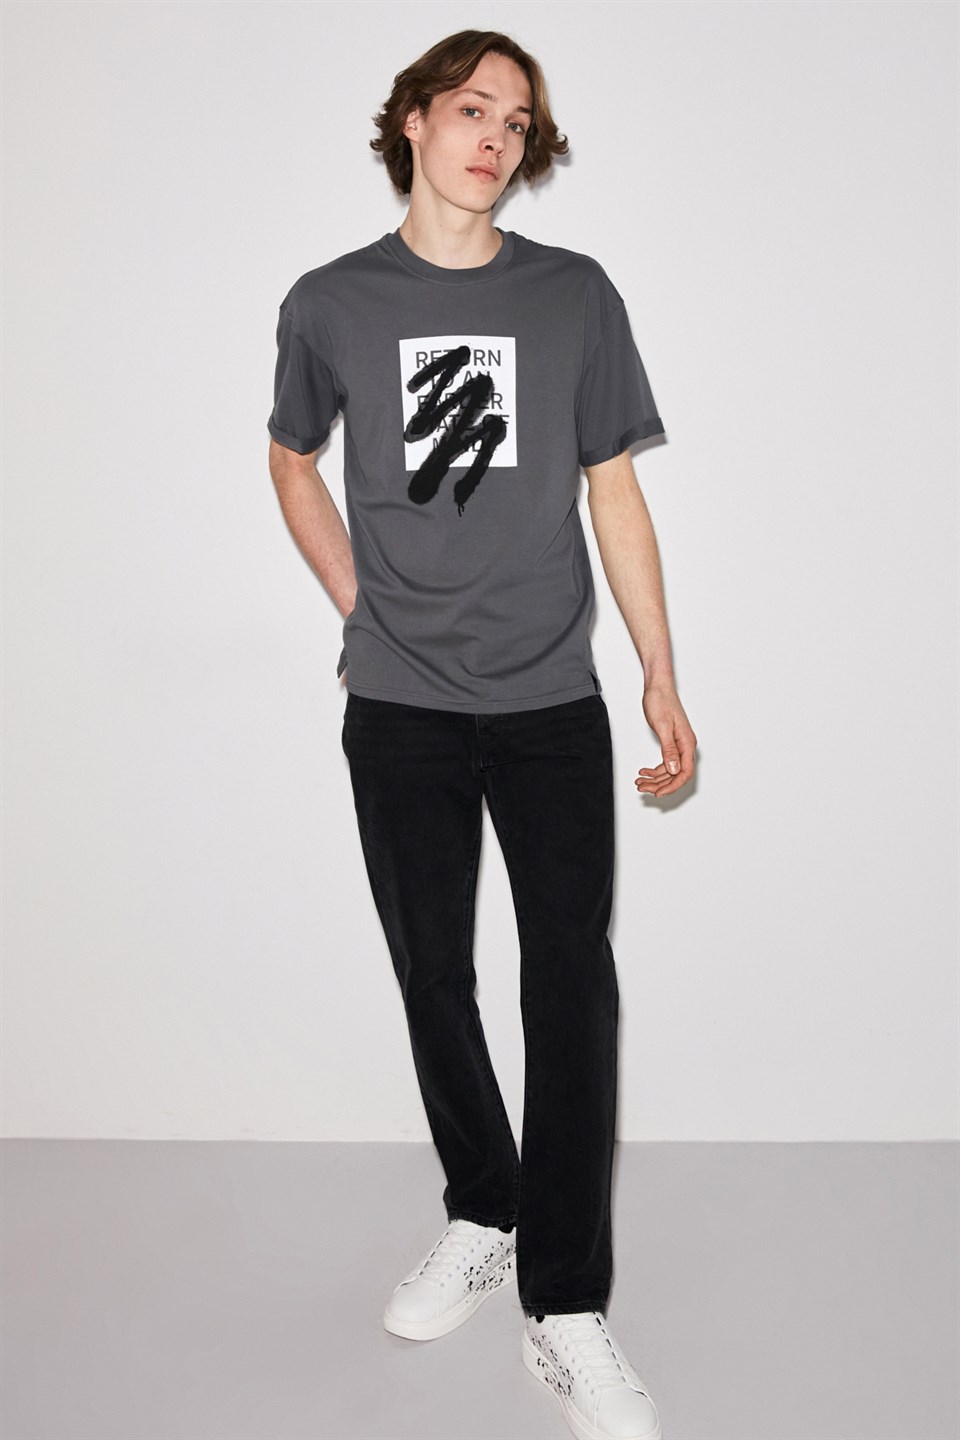 COLOMBUS Erkek Gri Yırtmaçlı ve baskılı Yuvarlak Yaka Comfort Fit T-Shirt